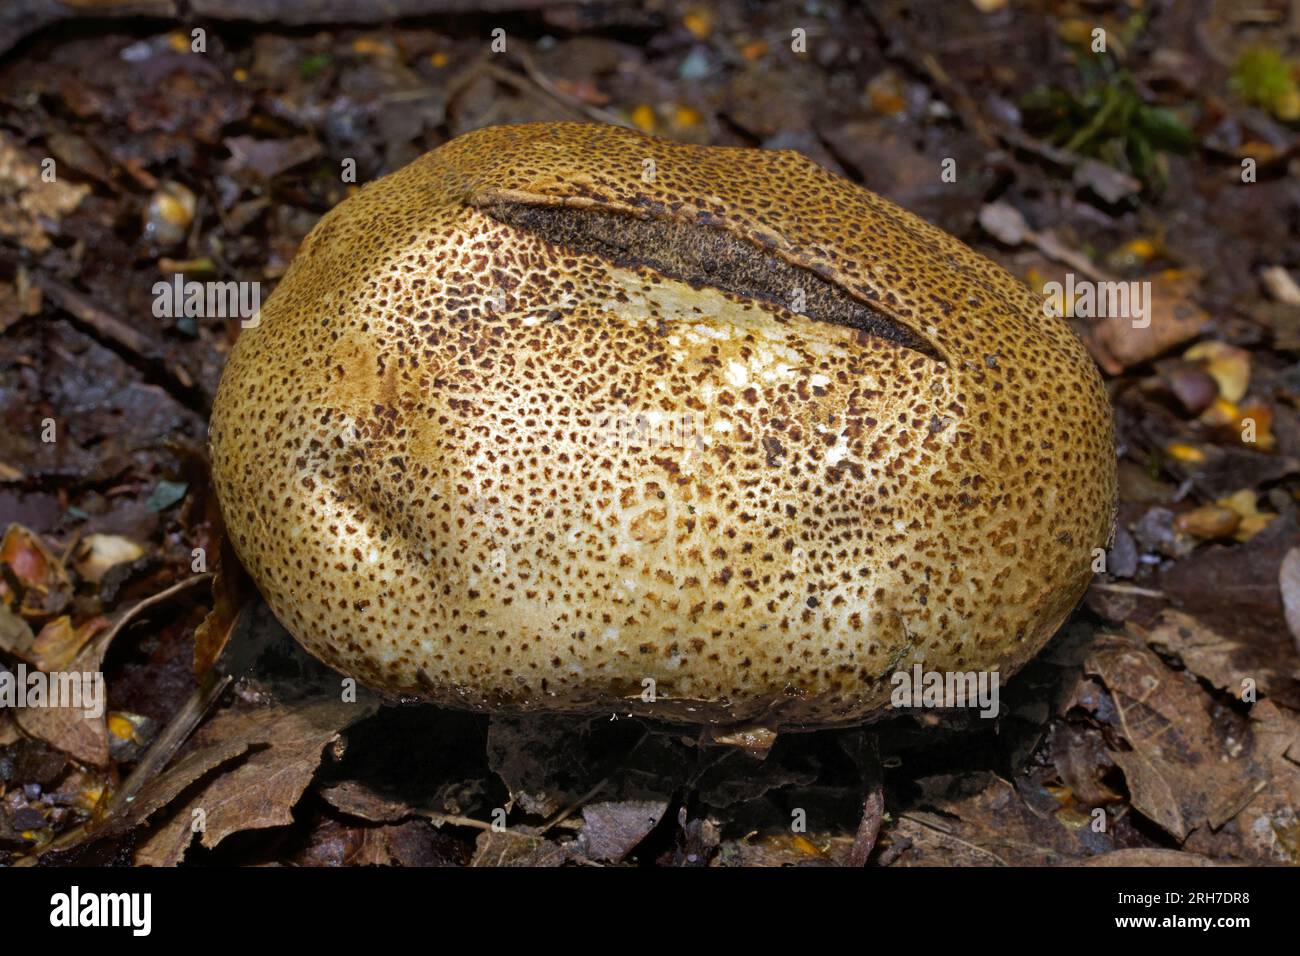 Lo scleroderma areolatum (Leopard Earthball) è un fungo di un gruppo noto come "sfere di terra". Si trova comunemente nelle foreste decidue, Foto Stock